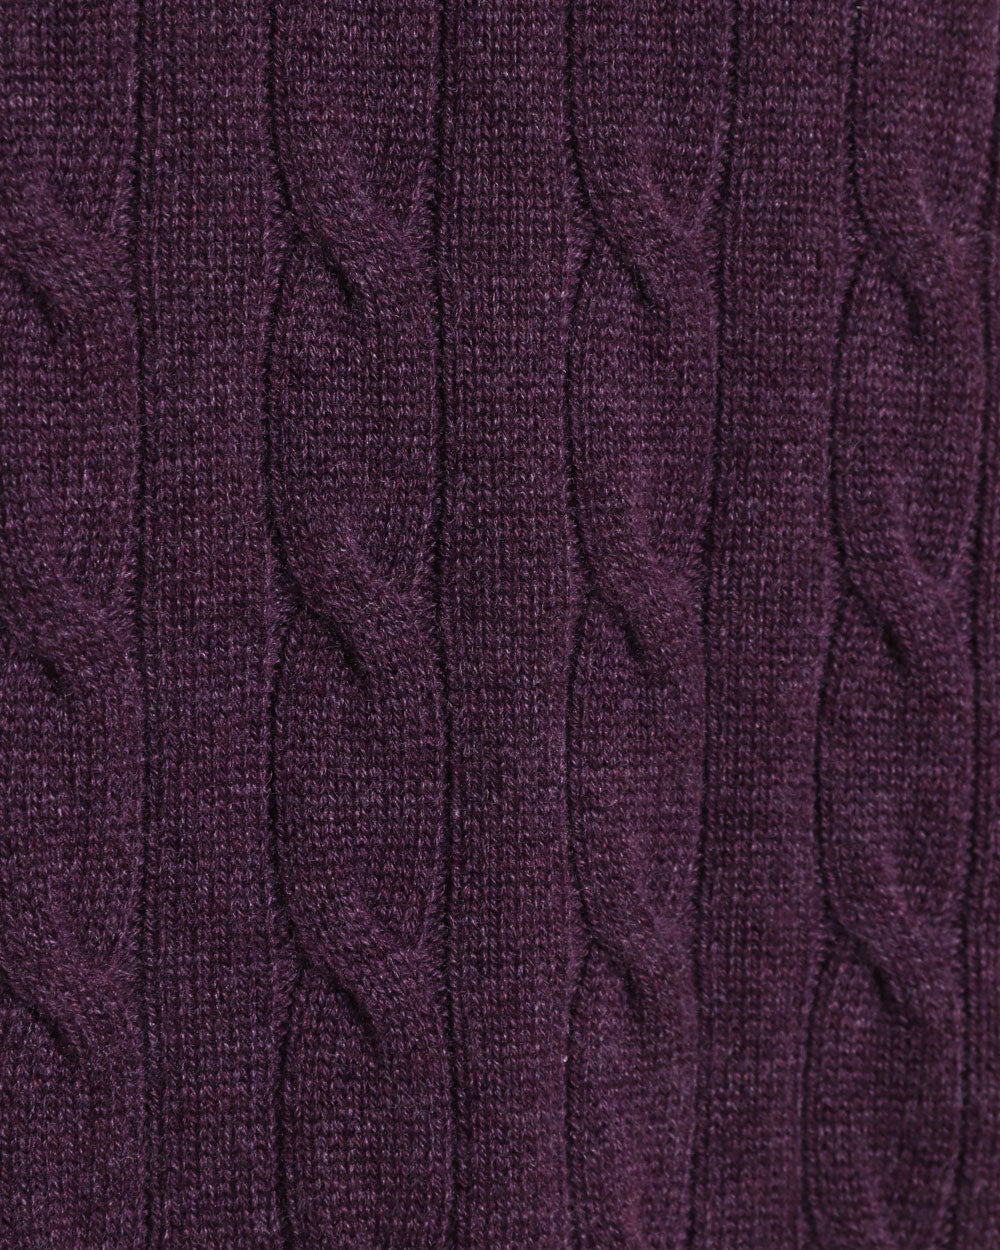 Purple Cashmere Cable Knit Quarter Zip Sweater